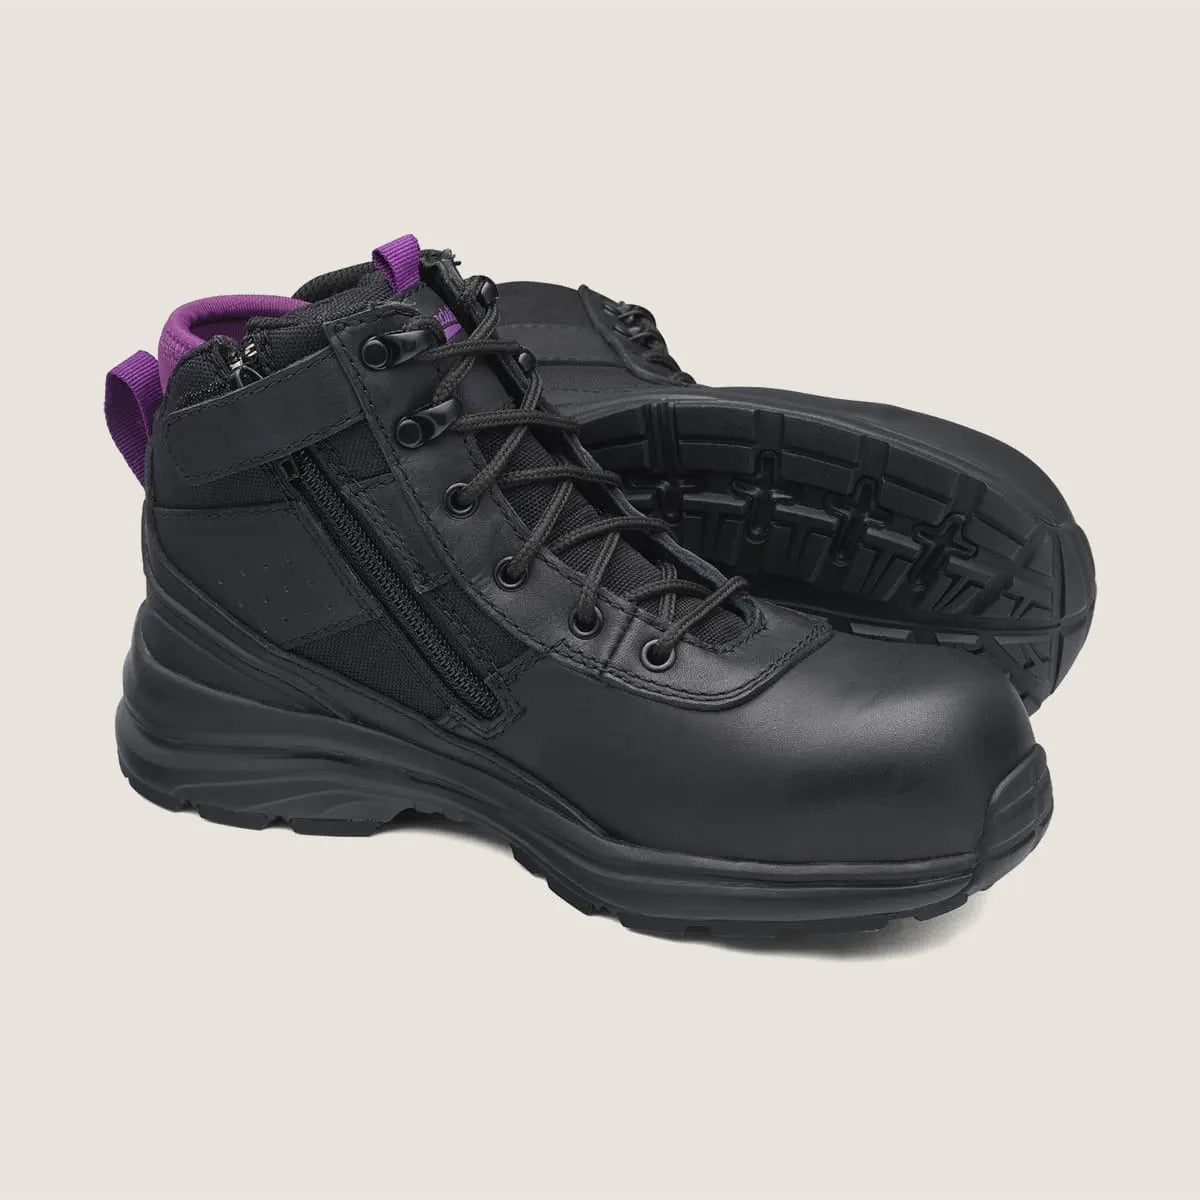 Blundstone 887 Women's Zip Safety Boot-Black